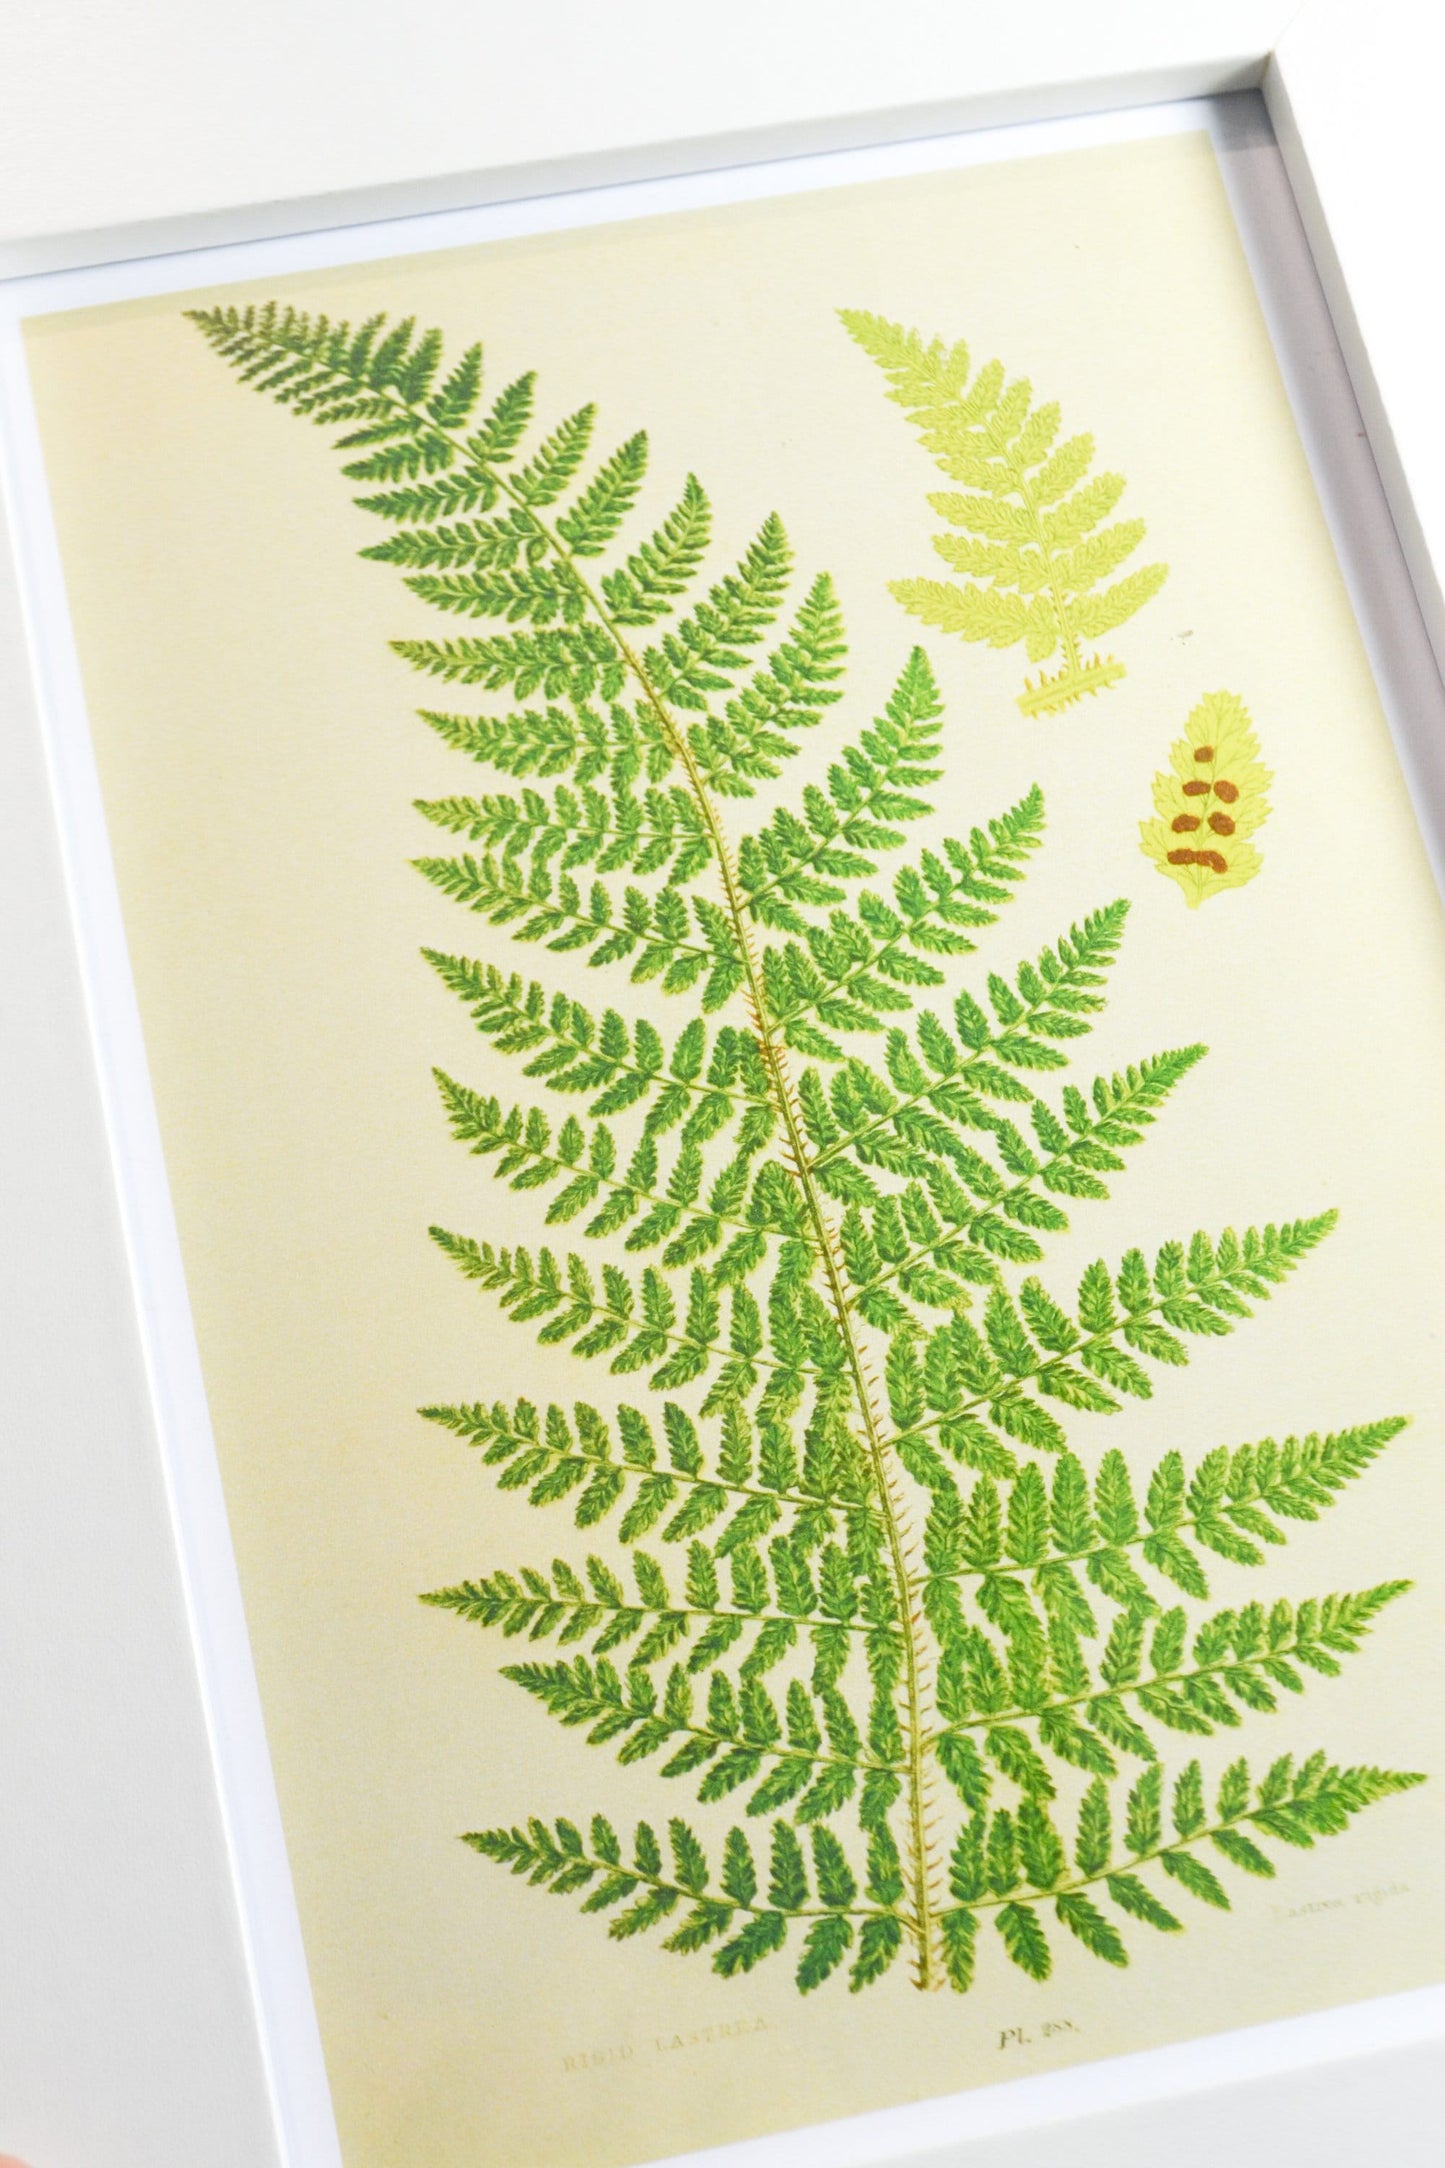 Set of 6 Framed antique Fern Prints, Fern vintage botanical print set botanical prints